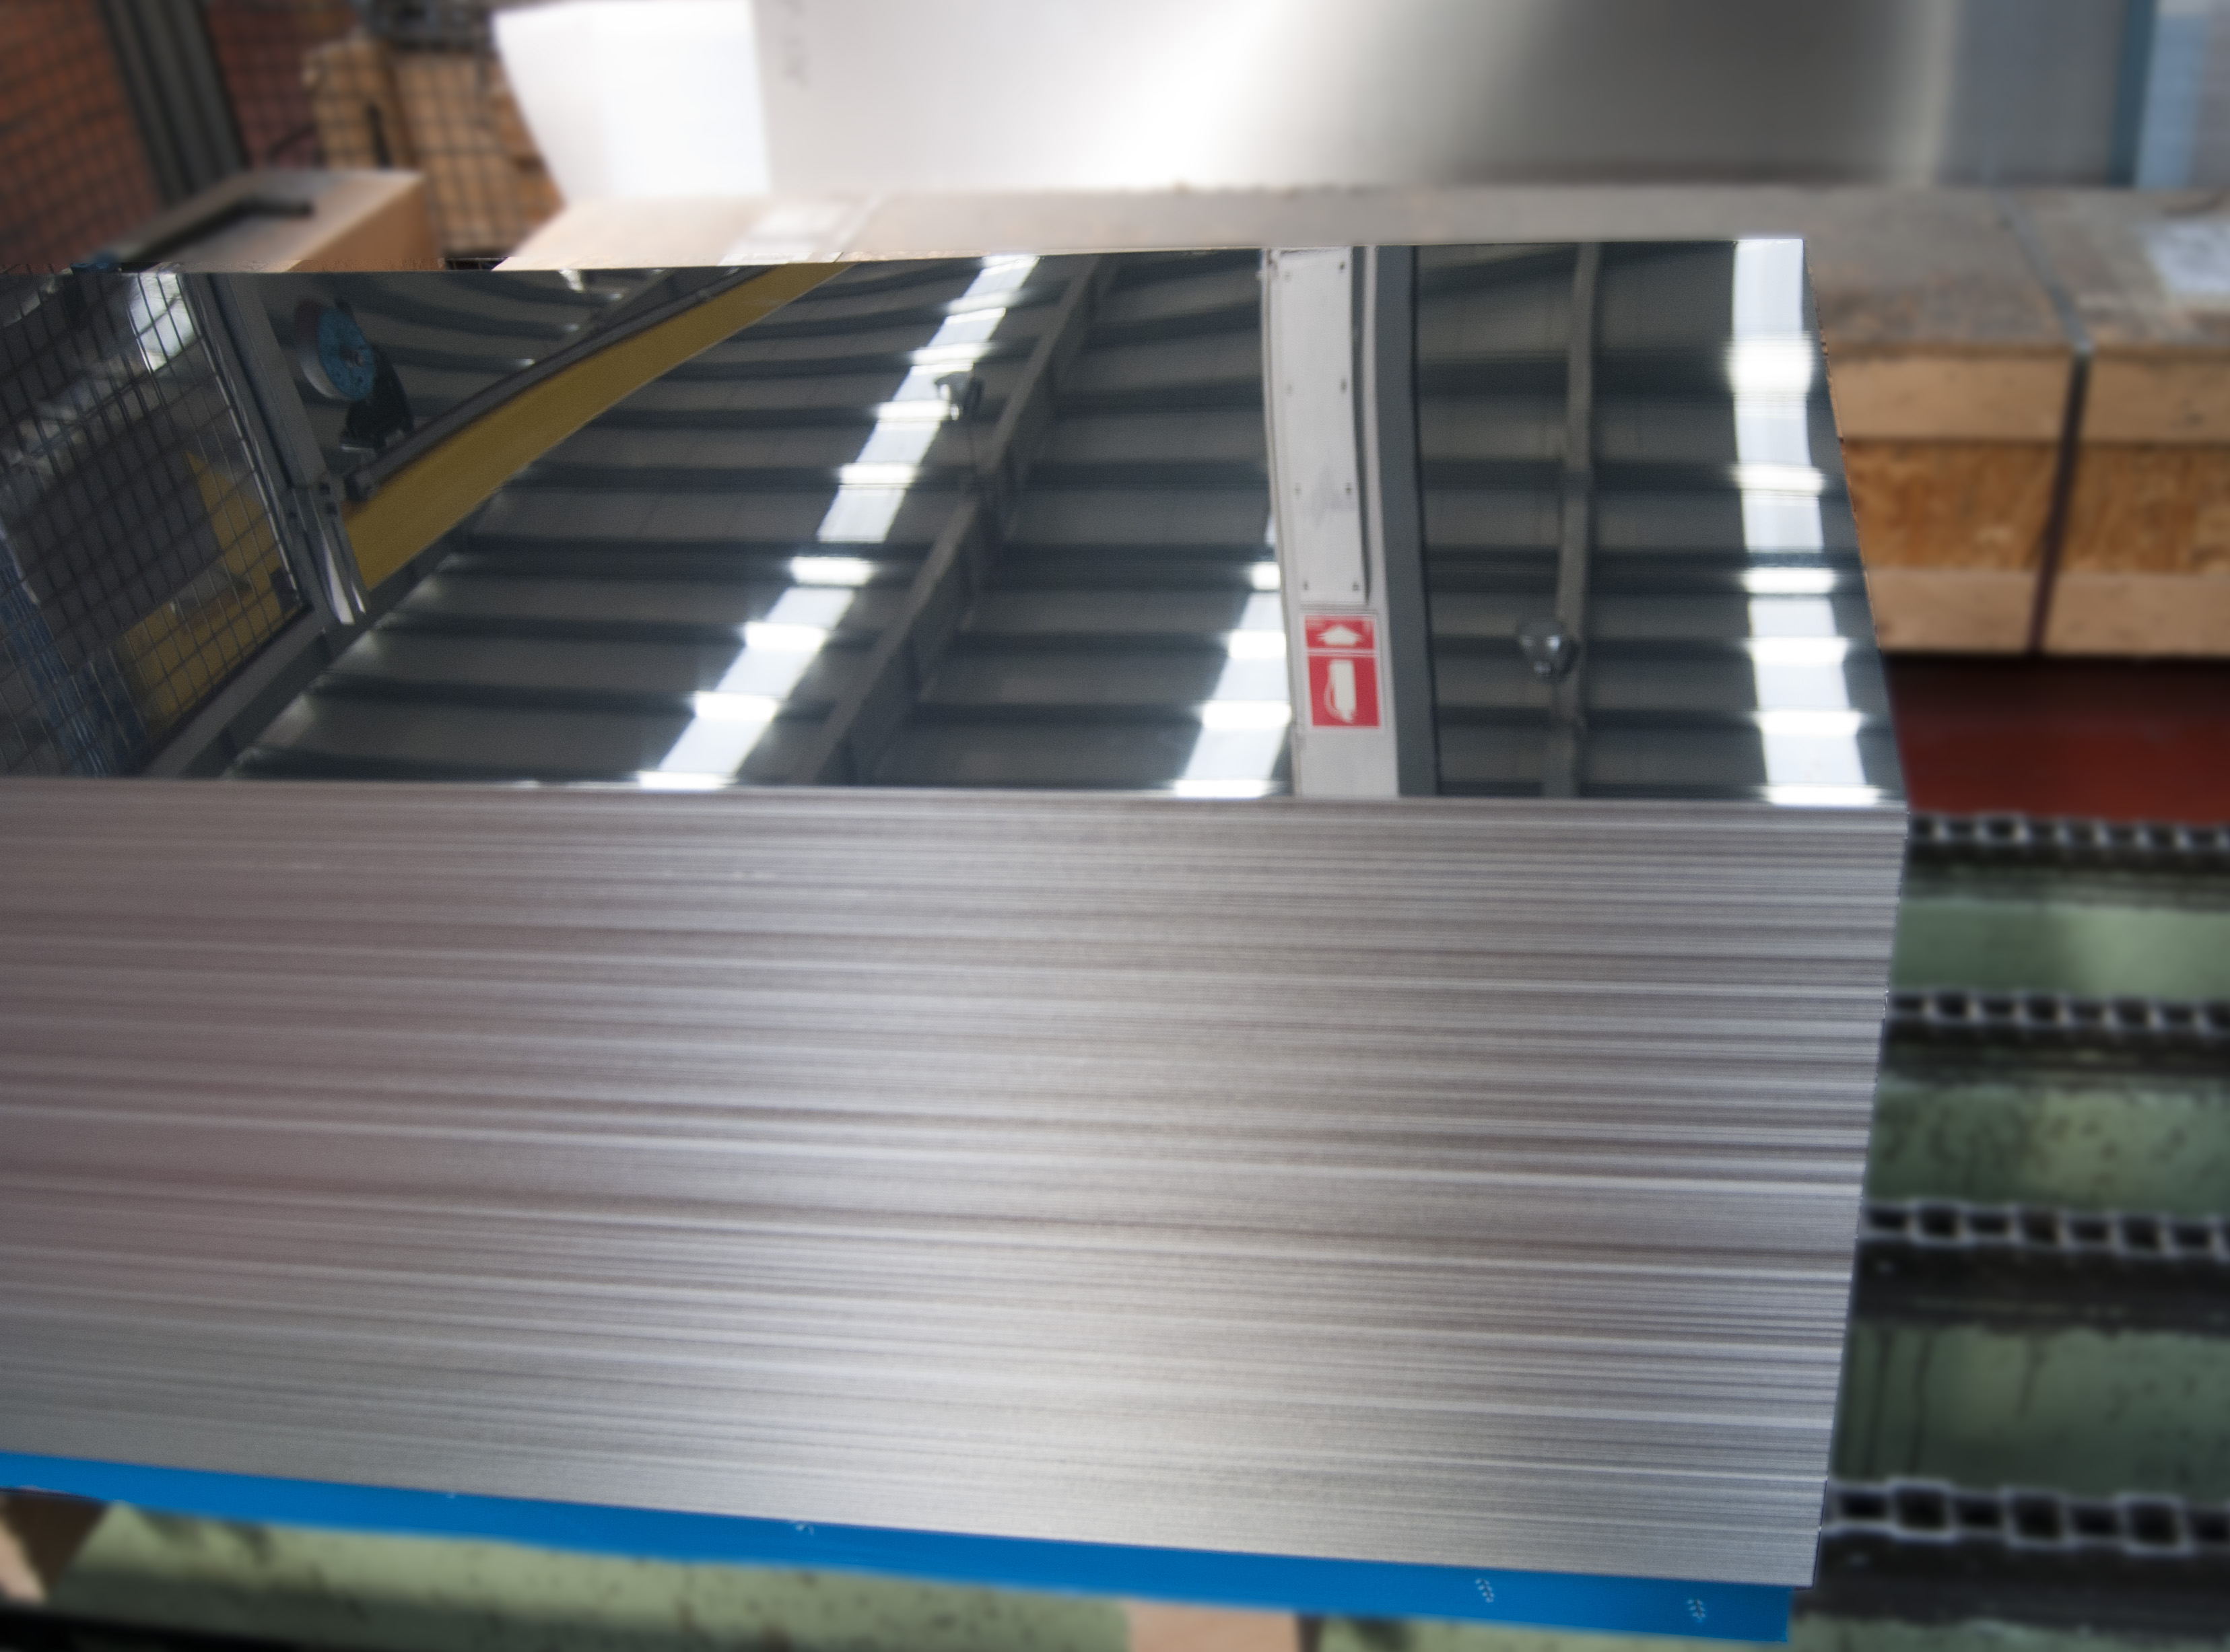 placas de chapa de acero inoxidable 100 x 100 mm / 1.4301 Aisi – 304 Chapa de acero inoxidable de 10 mm corte a elegir V2A 